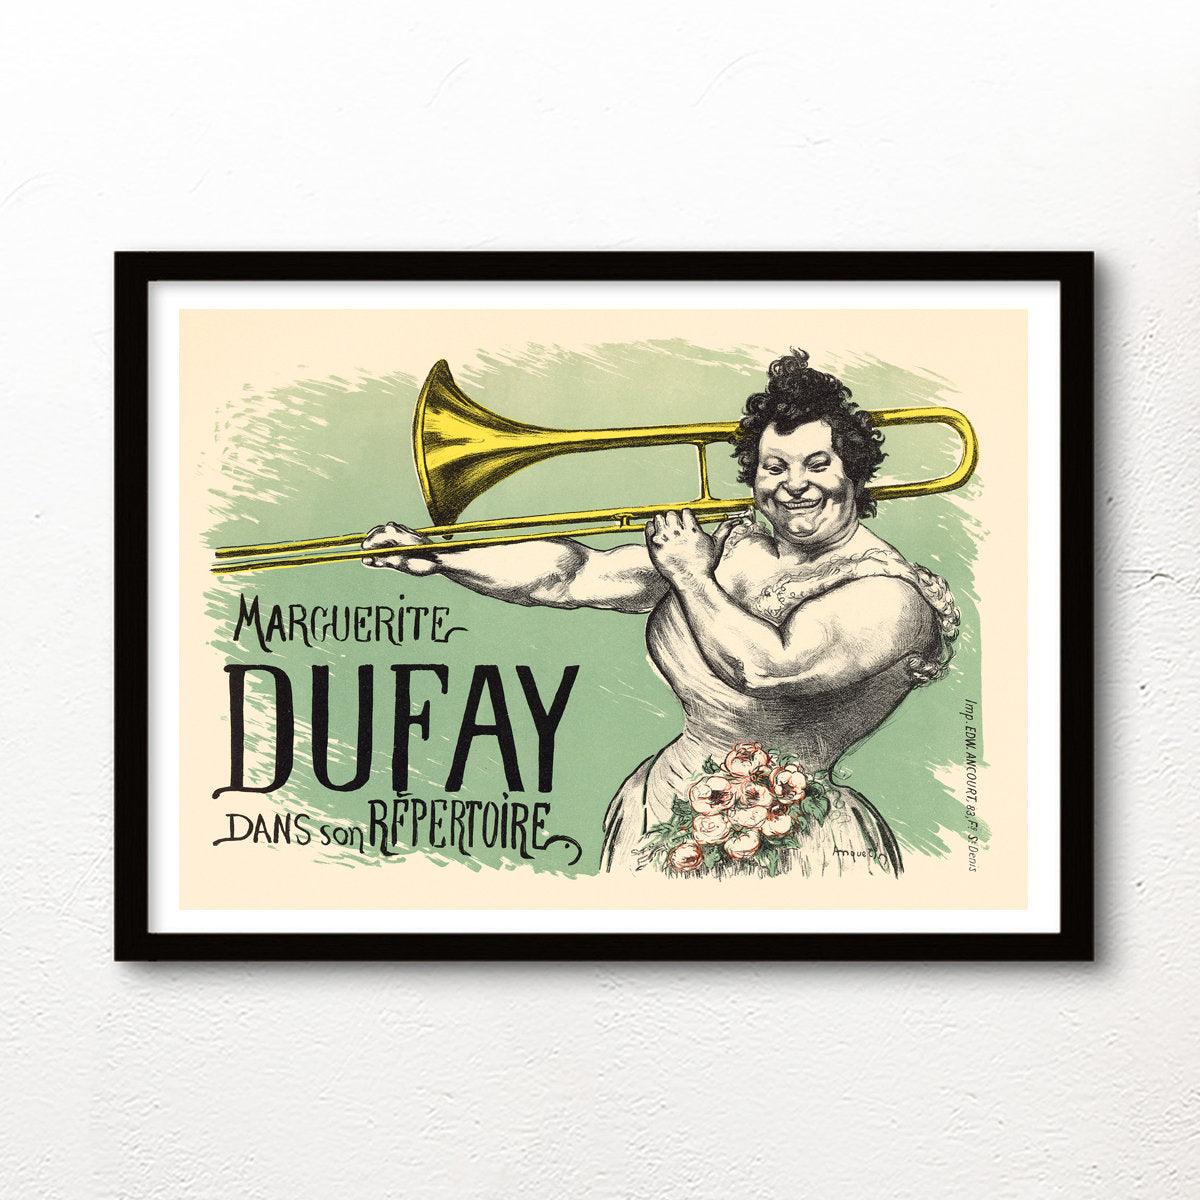 Marguerite Dufay - 1899 - Art Nouveau - Classic Posters